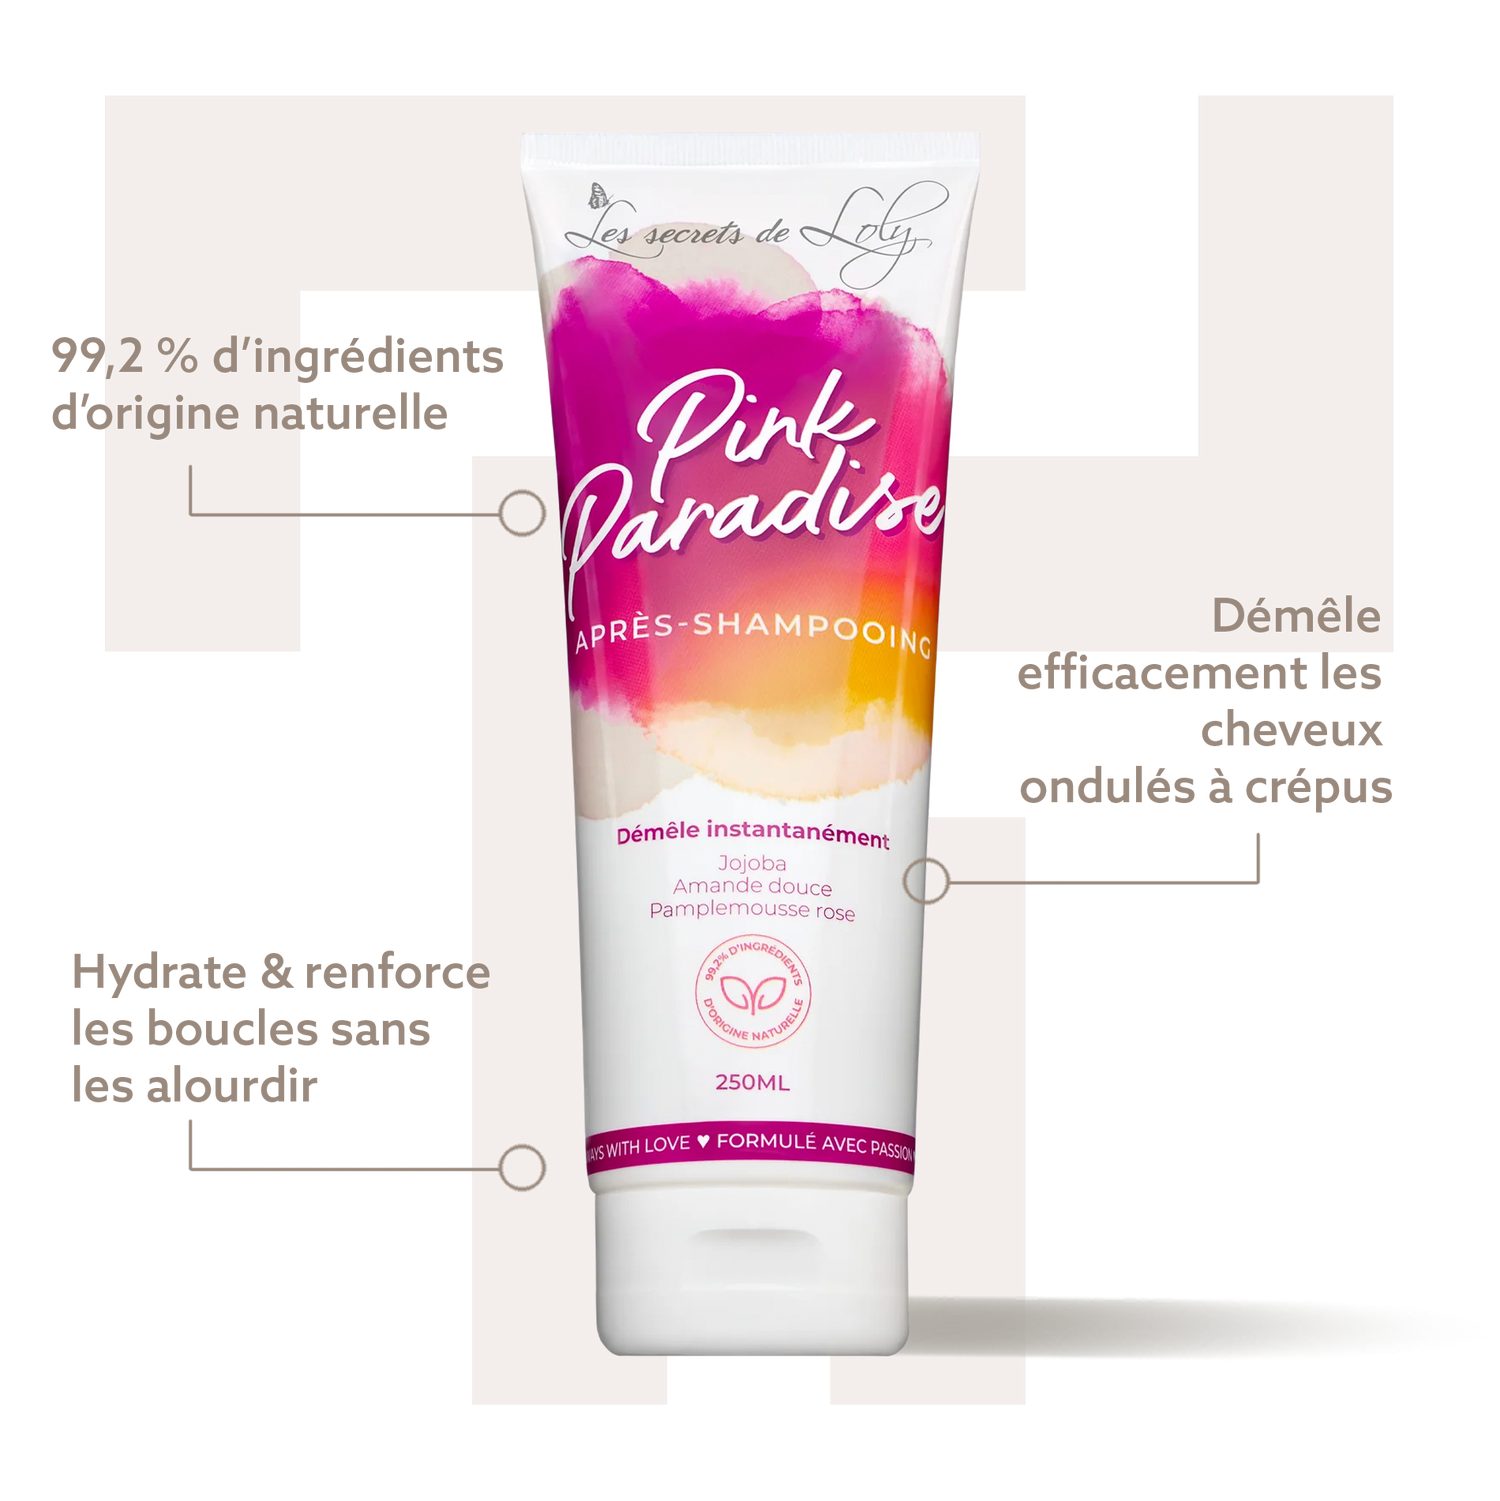 Pink Paradise - Les Secrets de Loly - Bienfaits - Après-shampoings - Tuccinardi